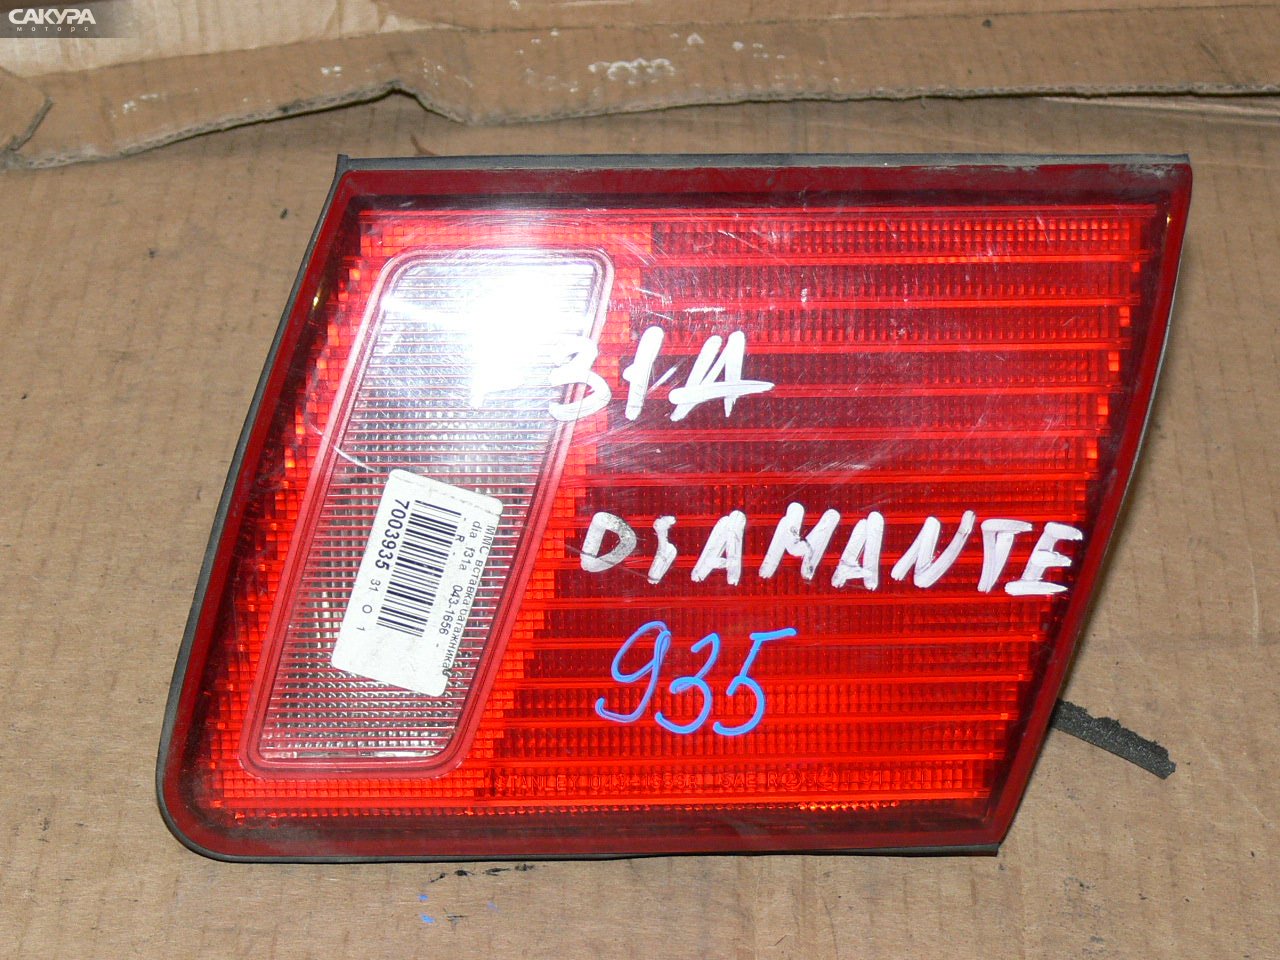 Фонарь вставка багажника правый Mitsubishi Diamante F31A 043-1656: купить в Сакура Иркутск.